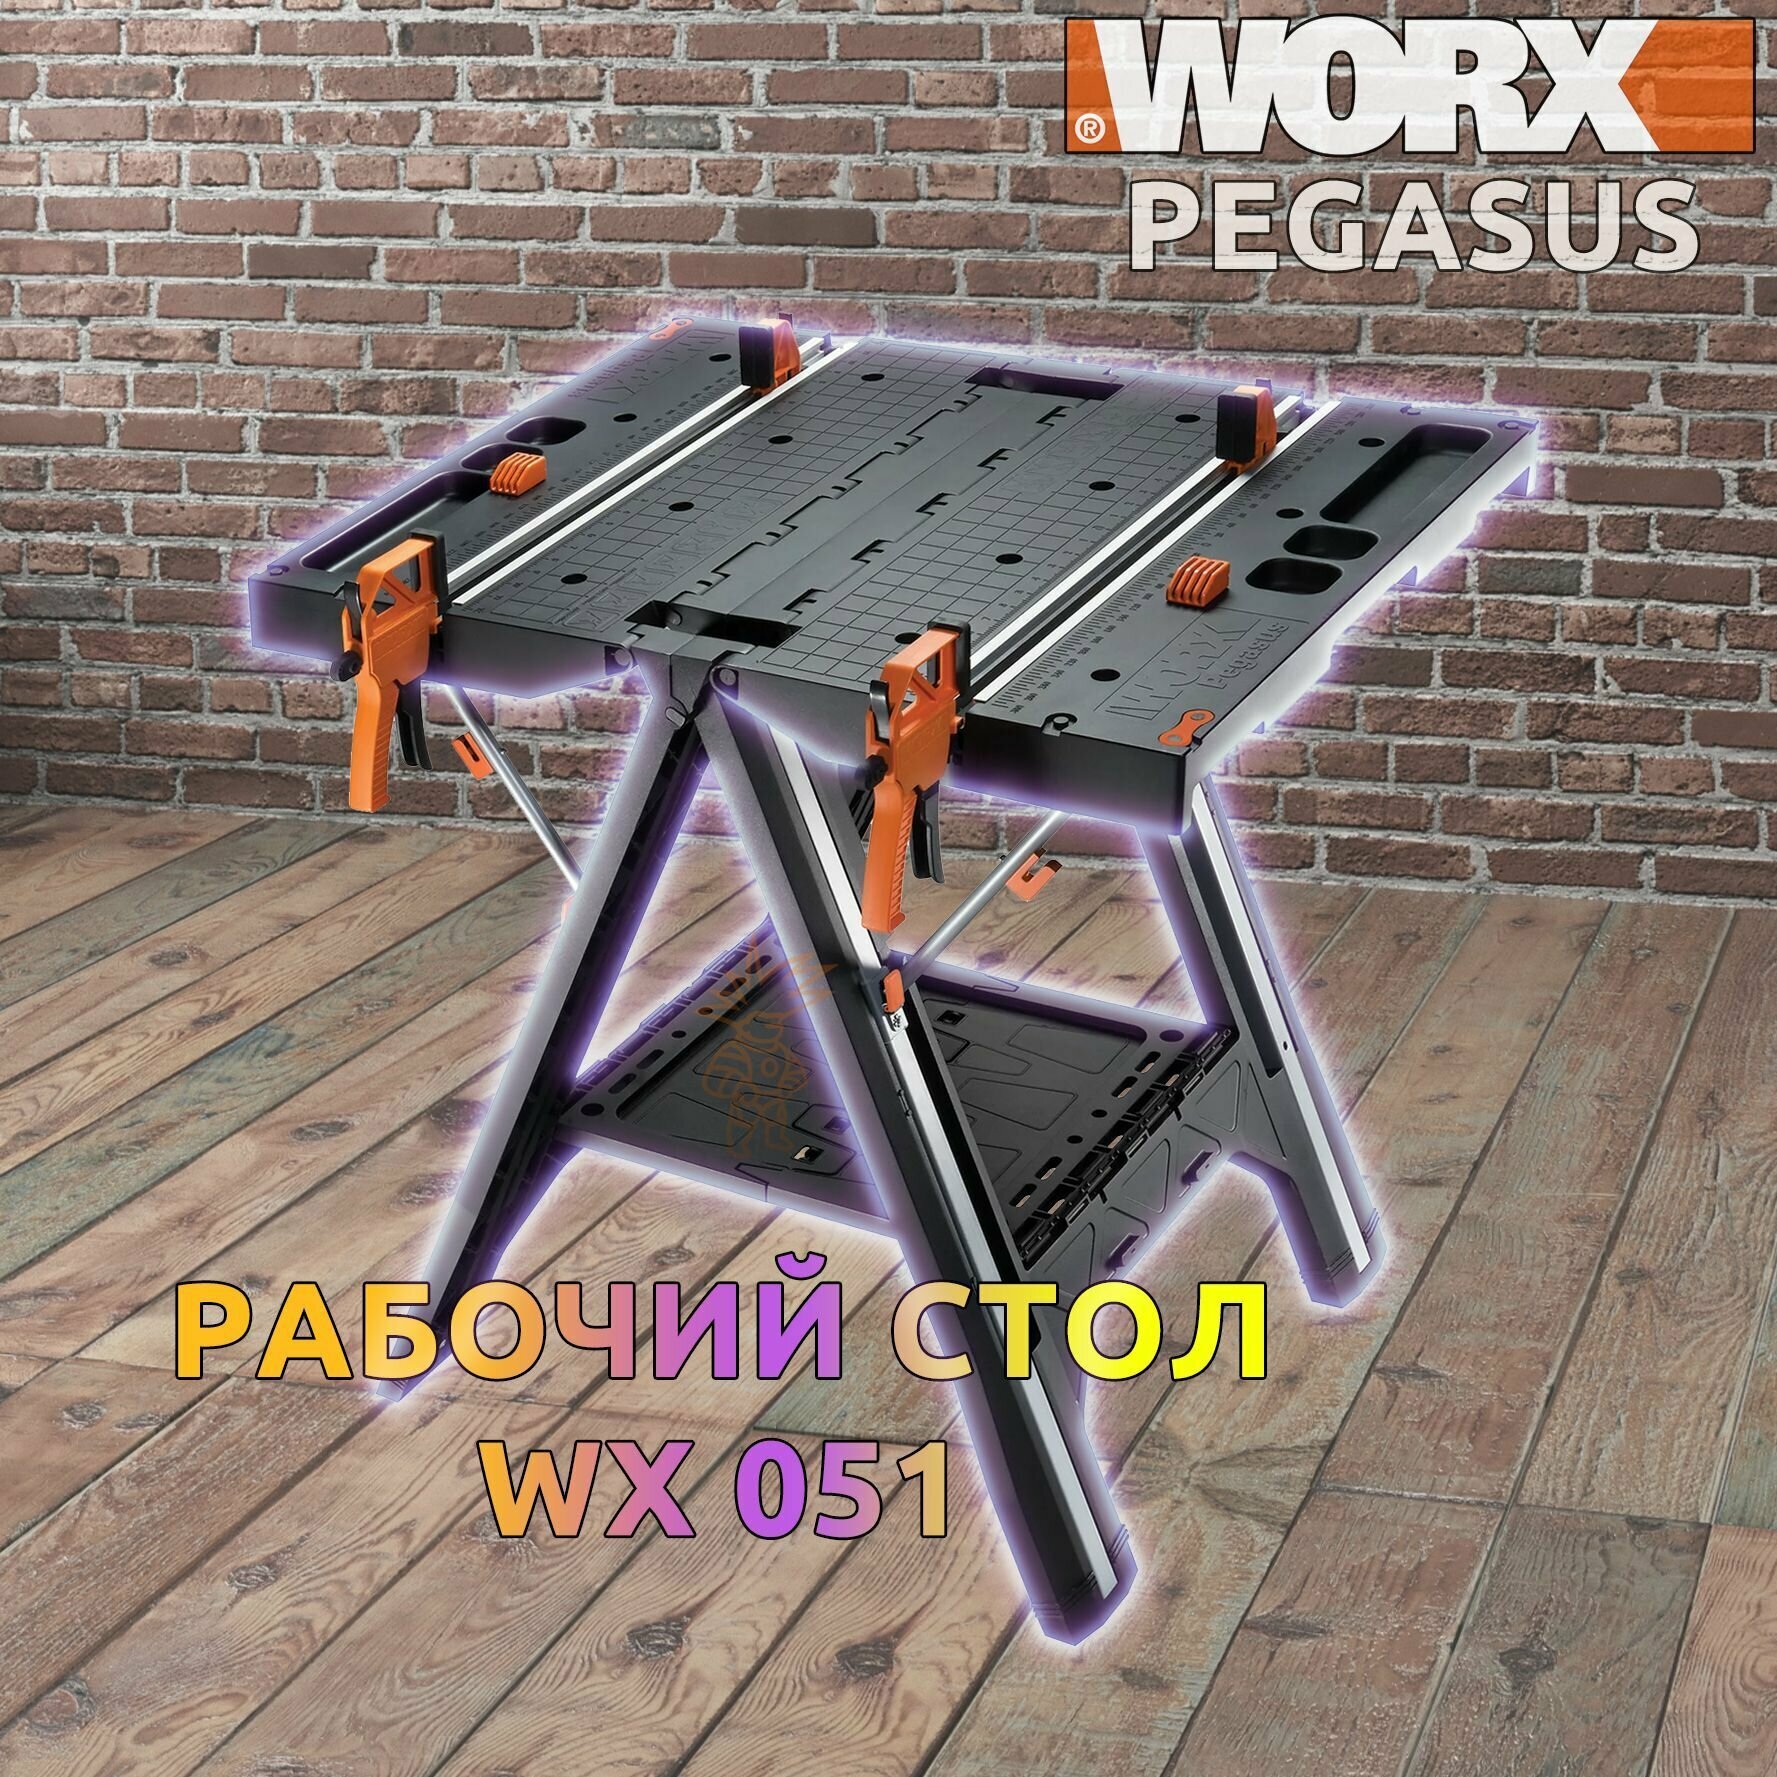 Складной верстак. Универсальный рабочий стол Worx Pegasus WX051, 79 x 63.5 x 82.5 см